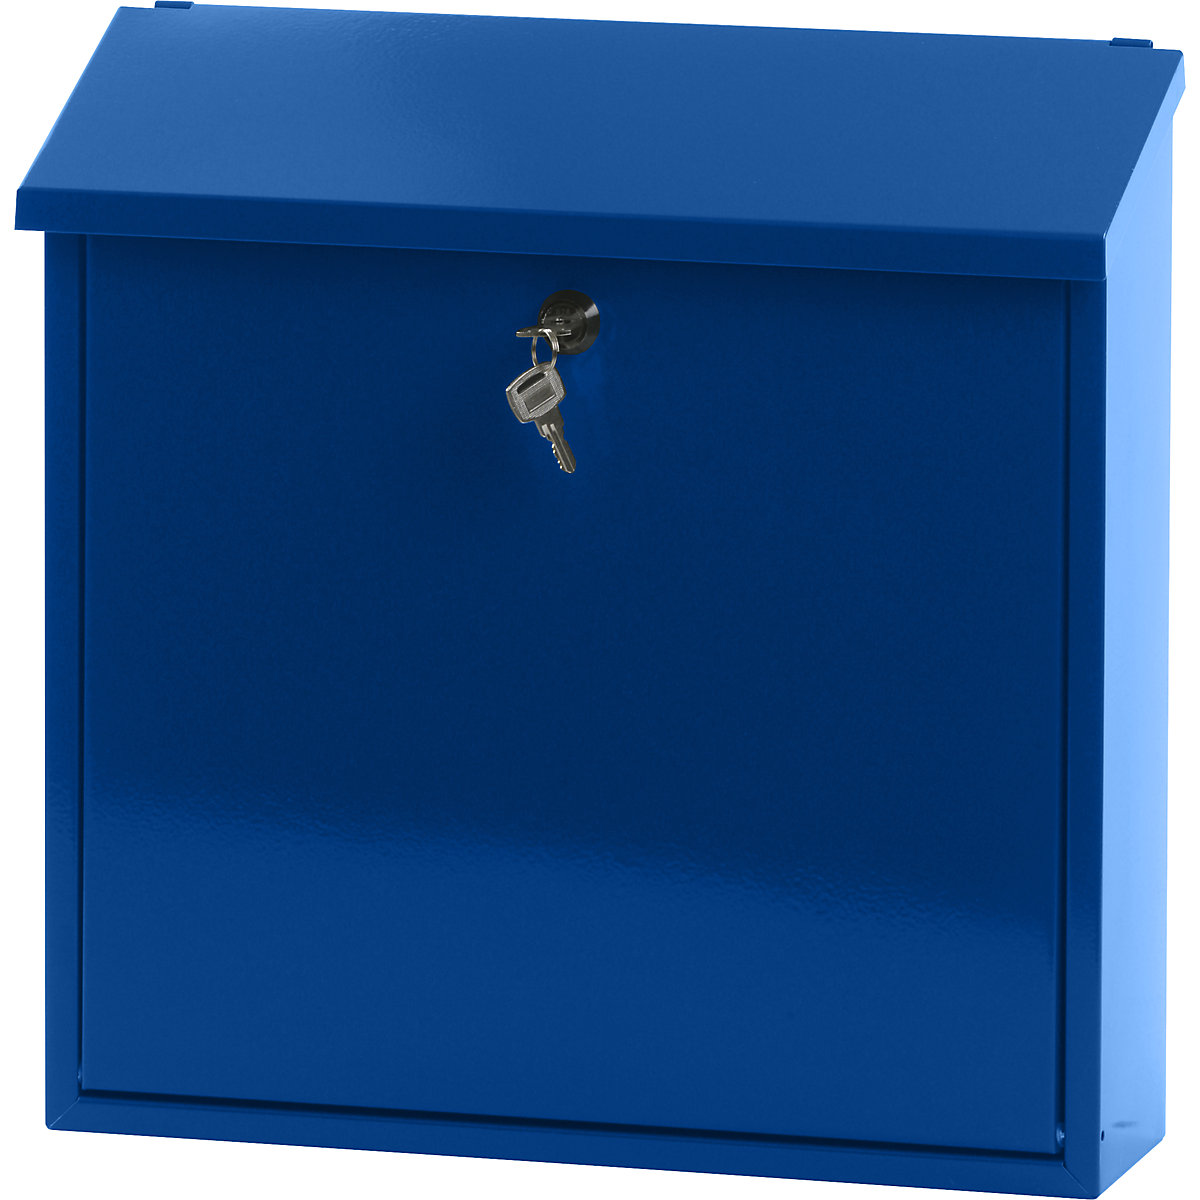 Caixa de correio, com telhado oblíquo dobrável, AxLxP 370 x 370 x 115 mm, chapa de aço, pintado a pó, azul RAL 5005-6